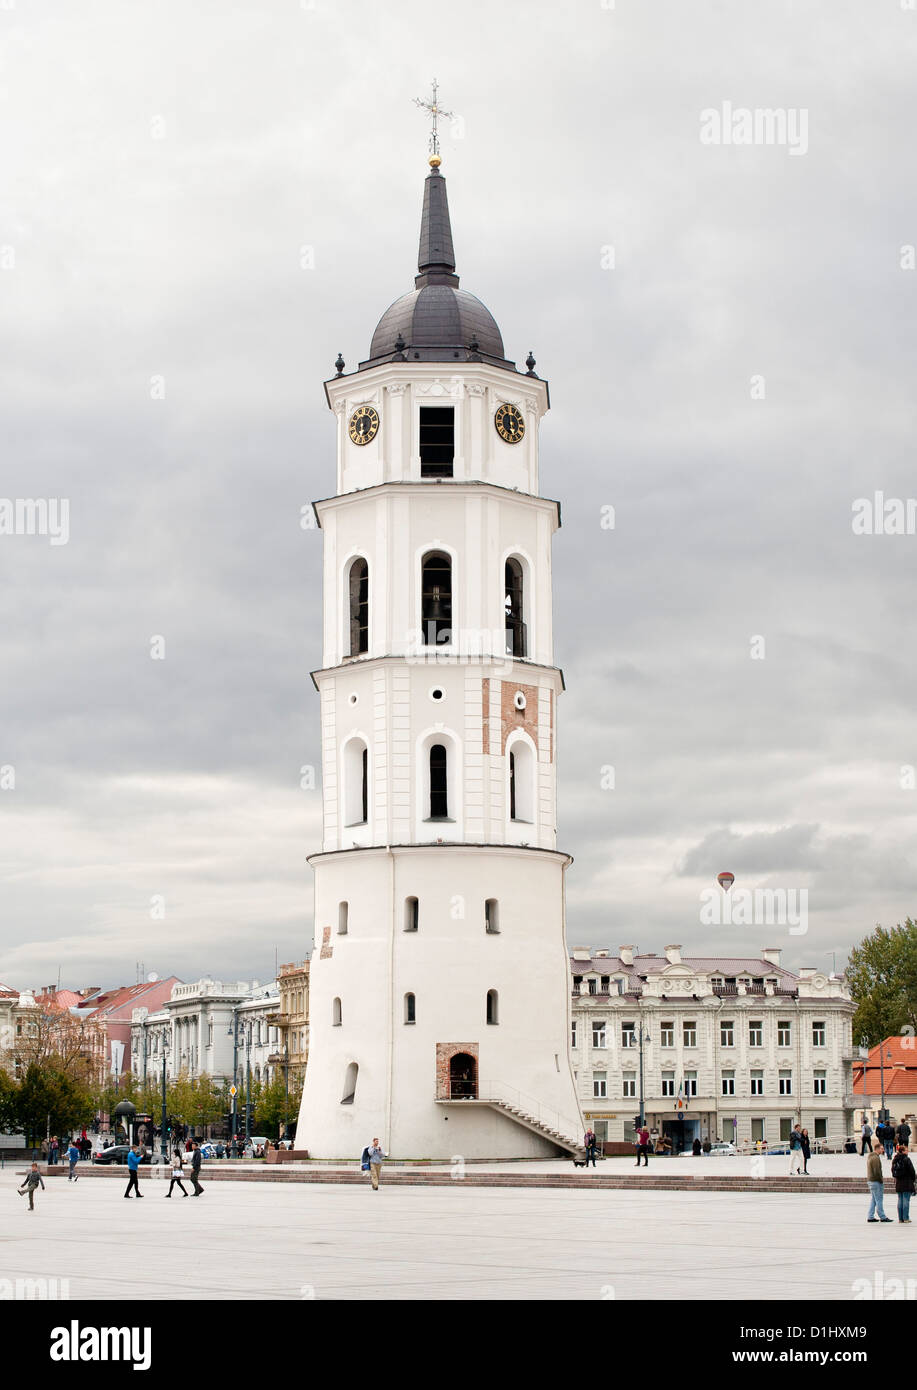 El campanario de la Catedral de Vilnius, en la Plaza de la Catedral de Vilnius, la capital de Lituania. Foto de stock